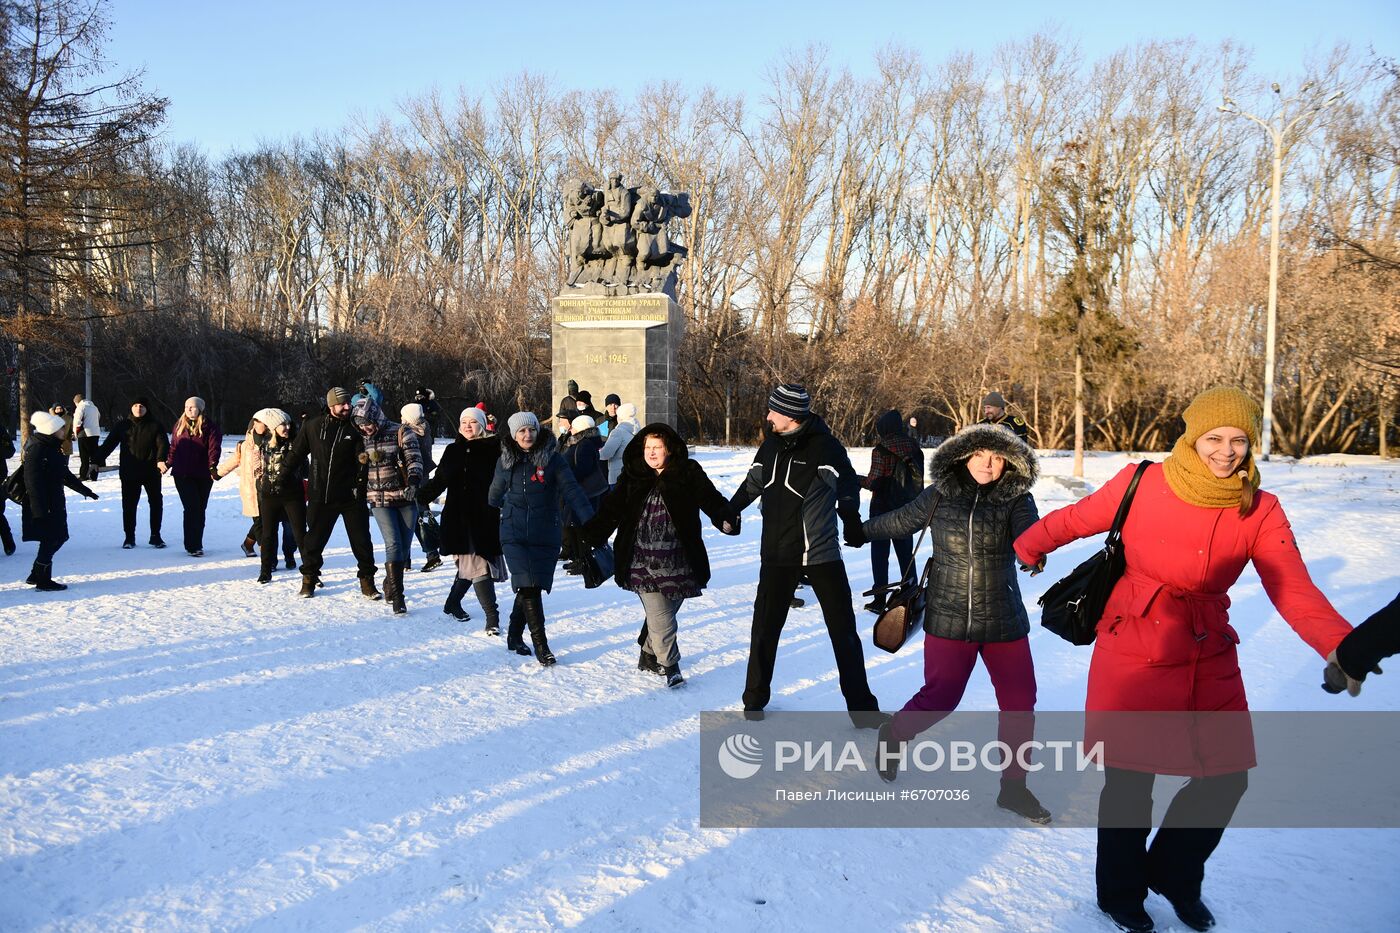 Митинг против введения QR-кодов в Екатеринбурге